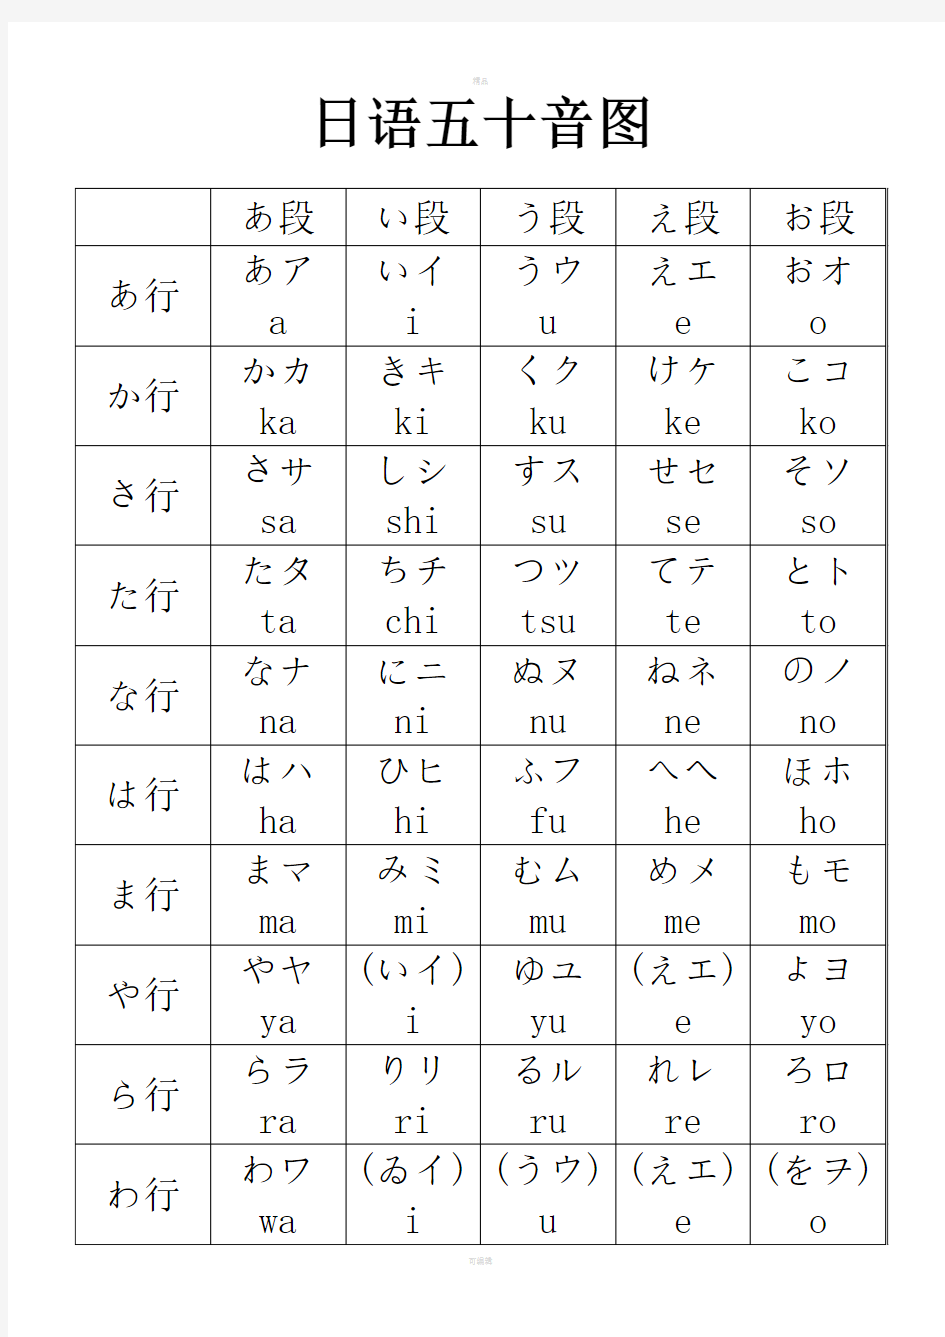 日语五十音图及发音规则